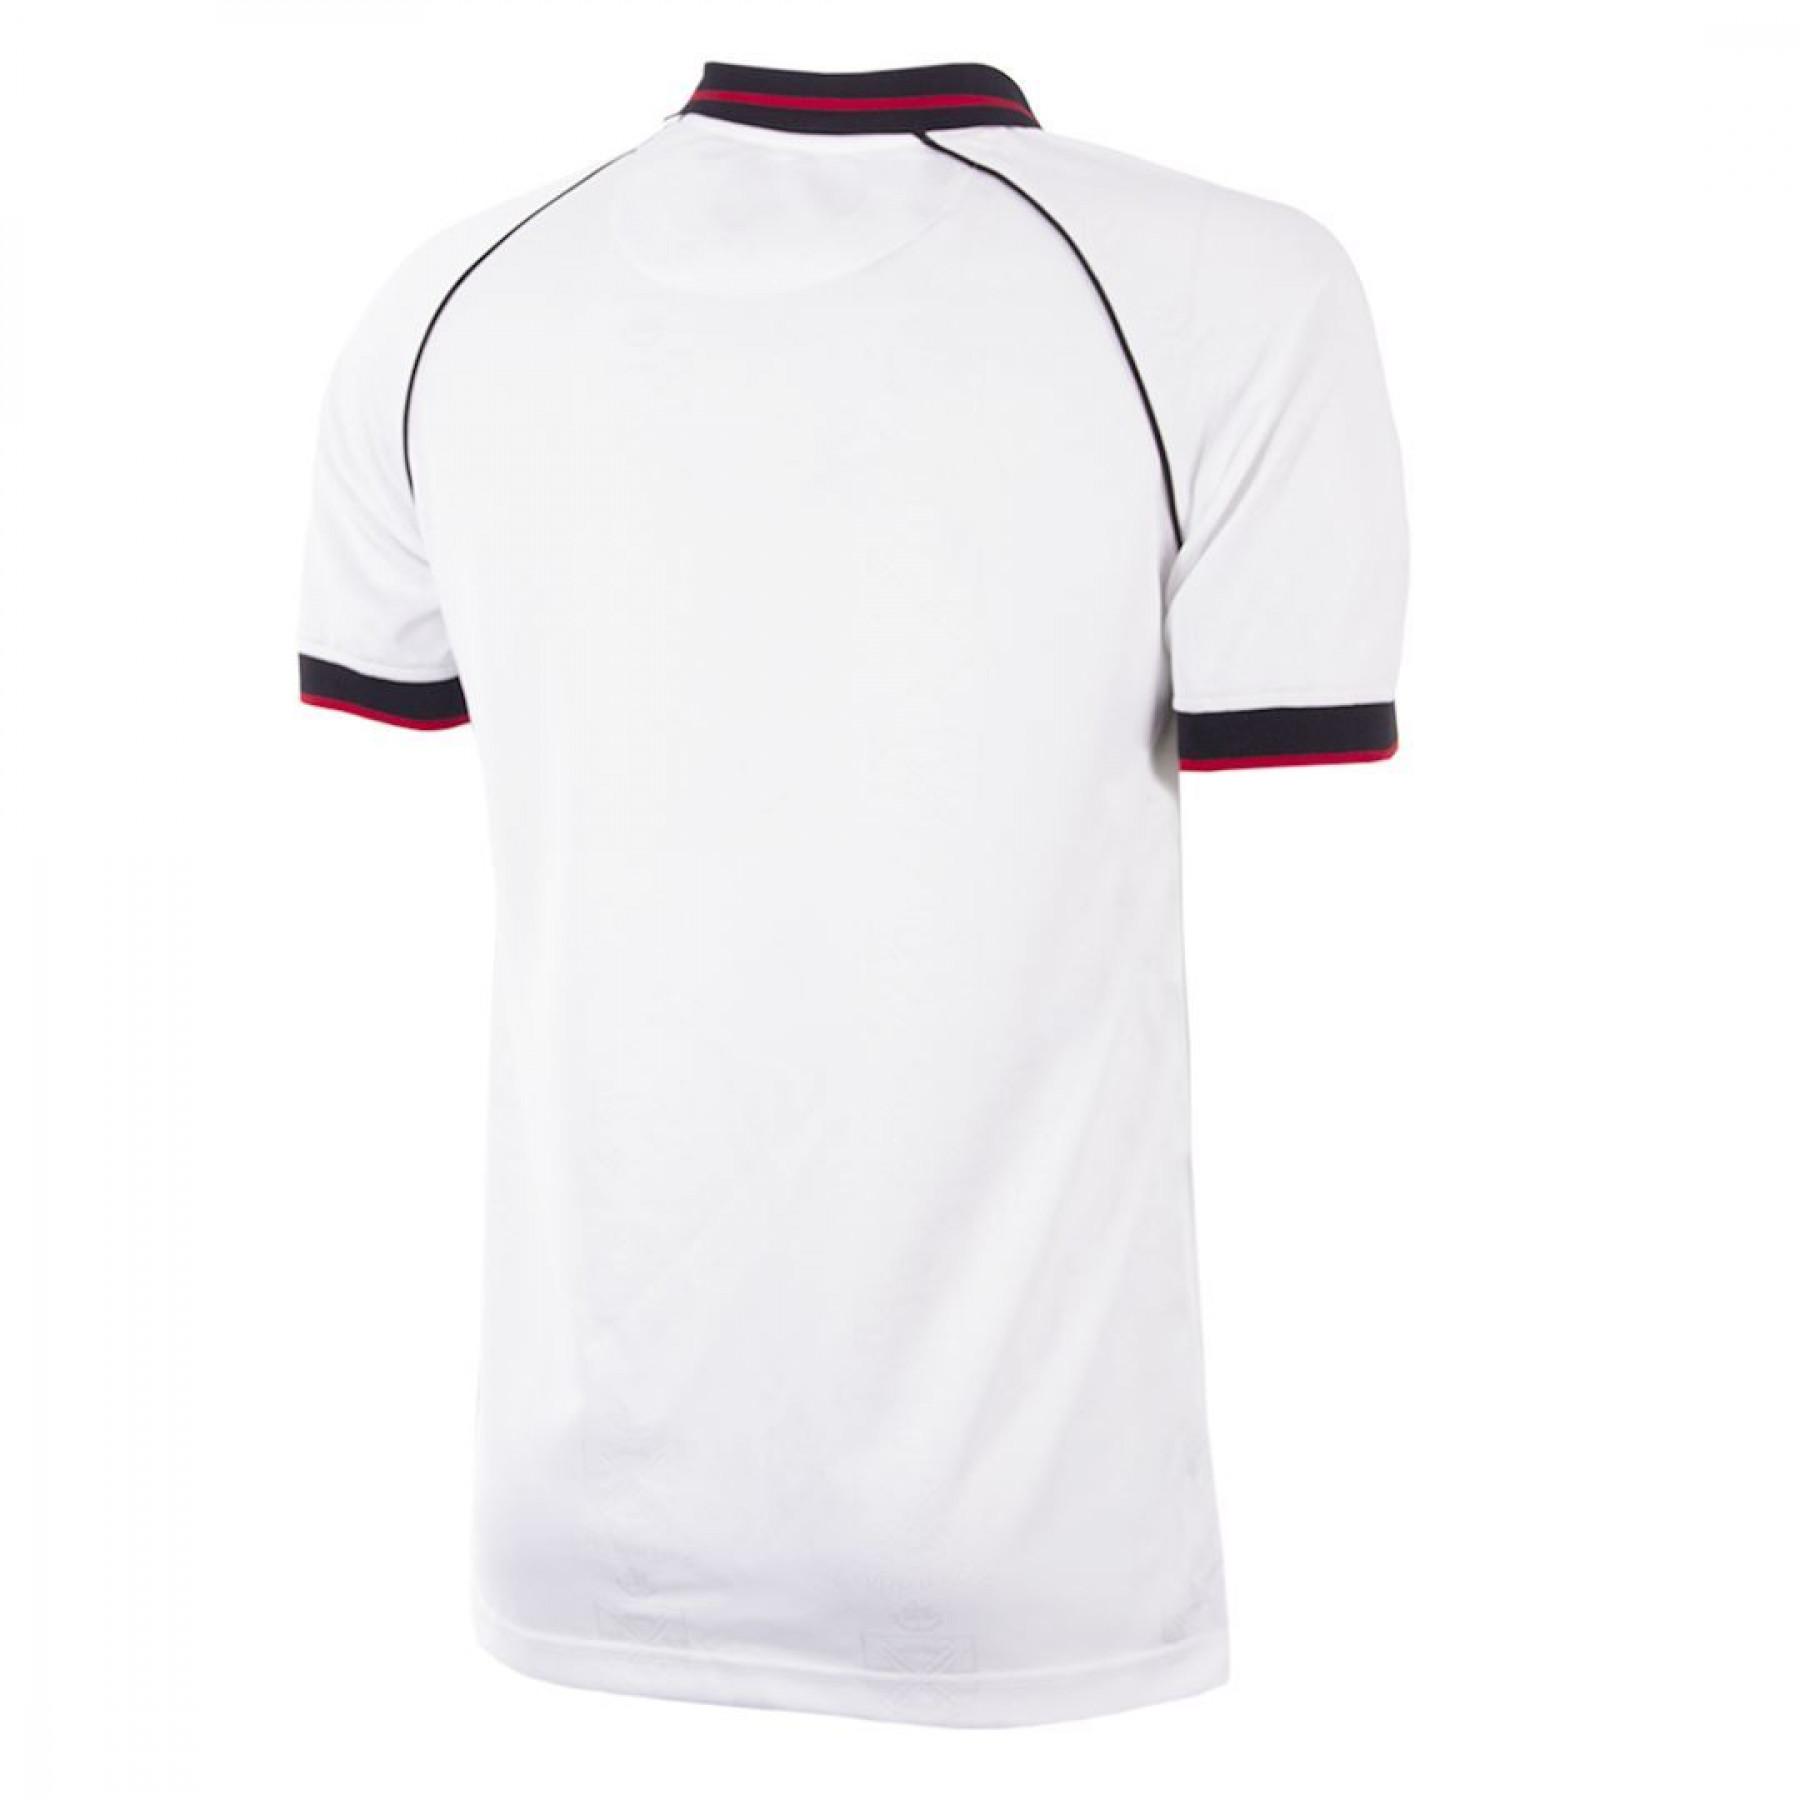 Camiseta Copa Fulham 1992/93